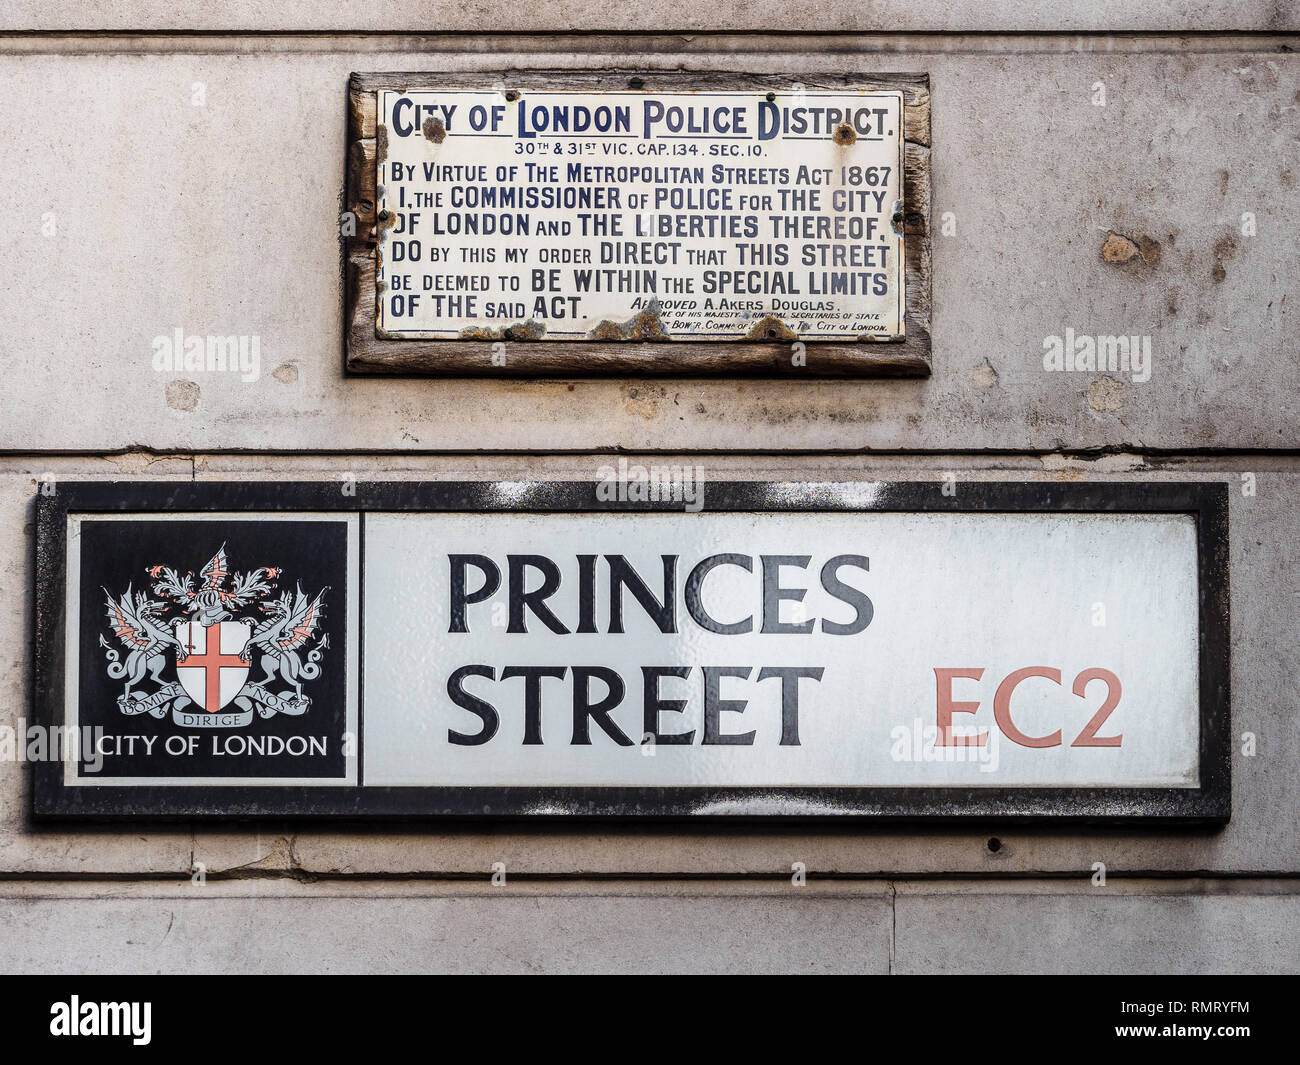 Princes Street EC2 - Vintage City de Londres des plaques de rue Princes St y compris la police District Sign Banque D'Images